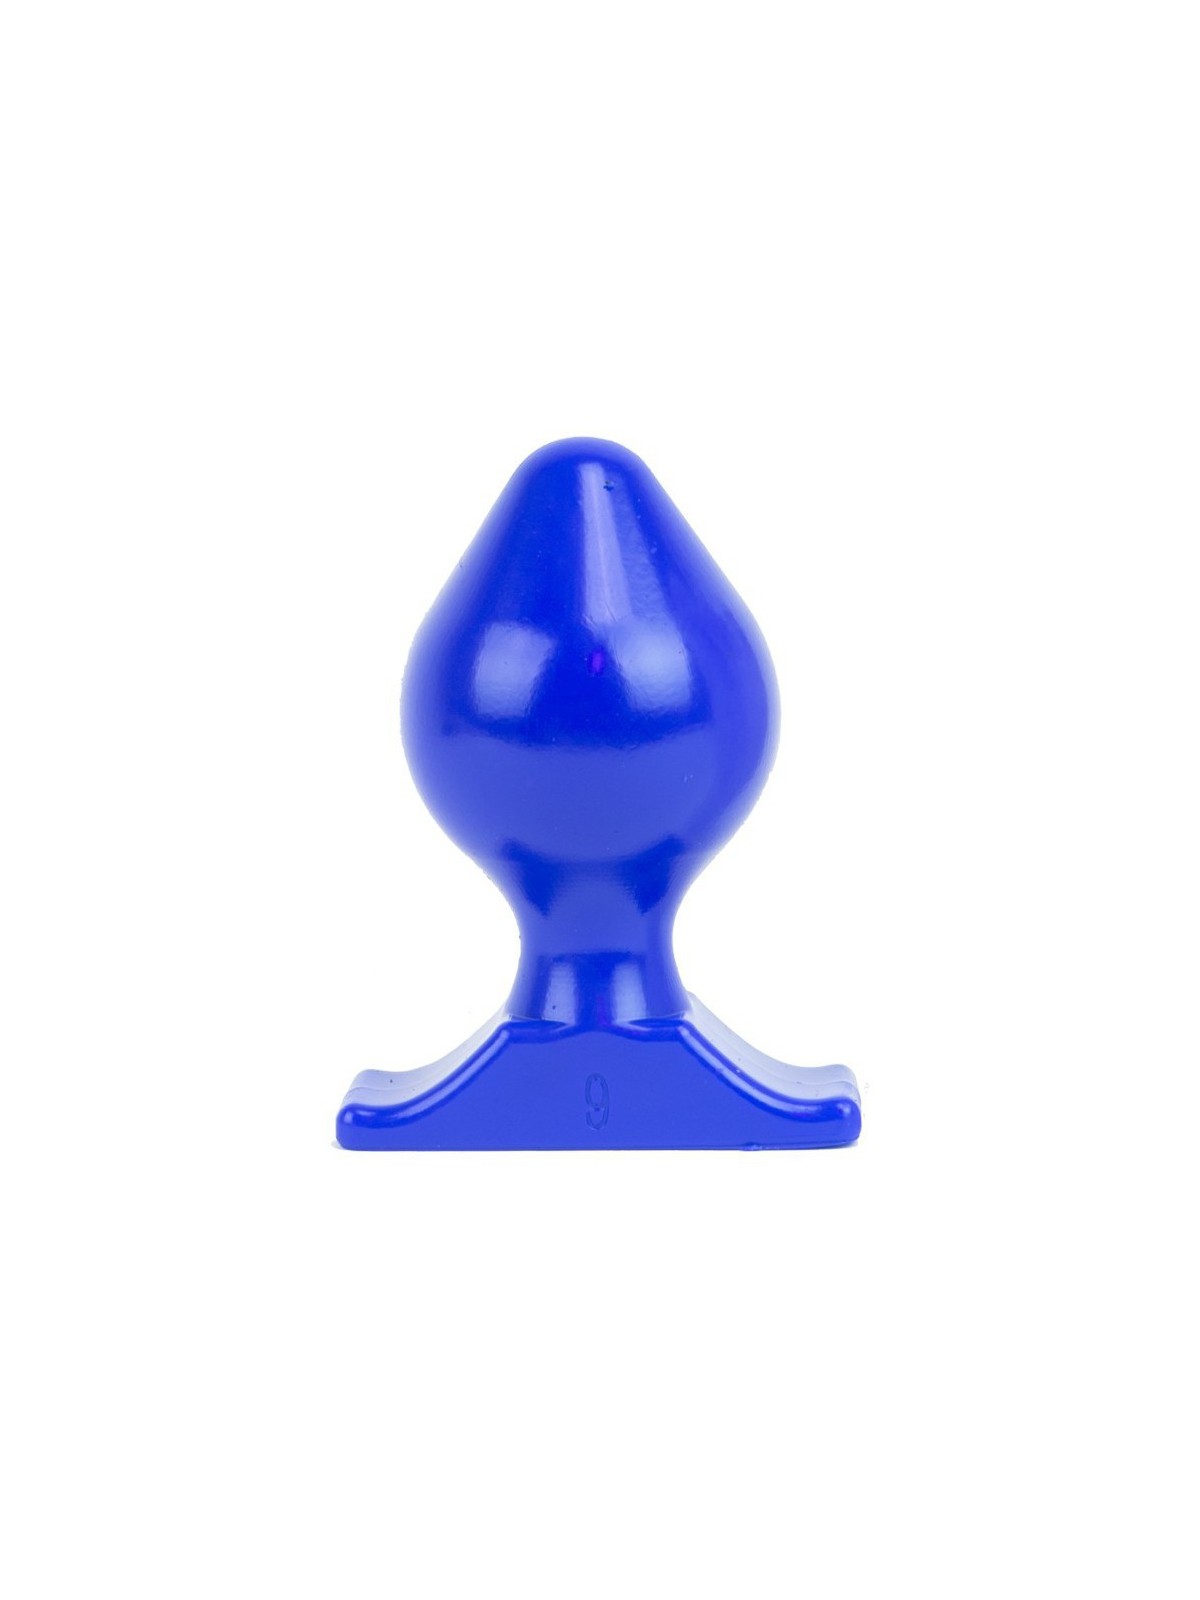 imports Plug XL All Blue 14x9cm Le Plug XL All Blue est un plug gay large de 9cm au maximum avec une forme arrondie volumineuse.